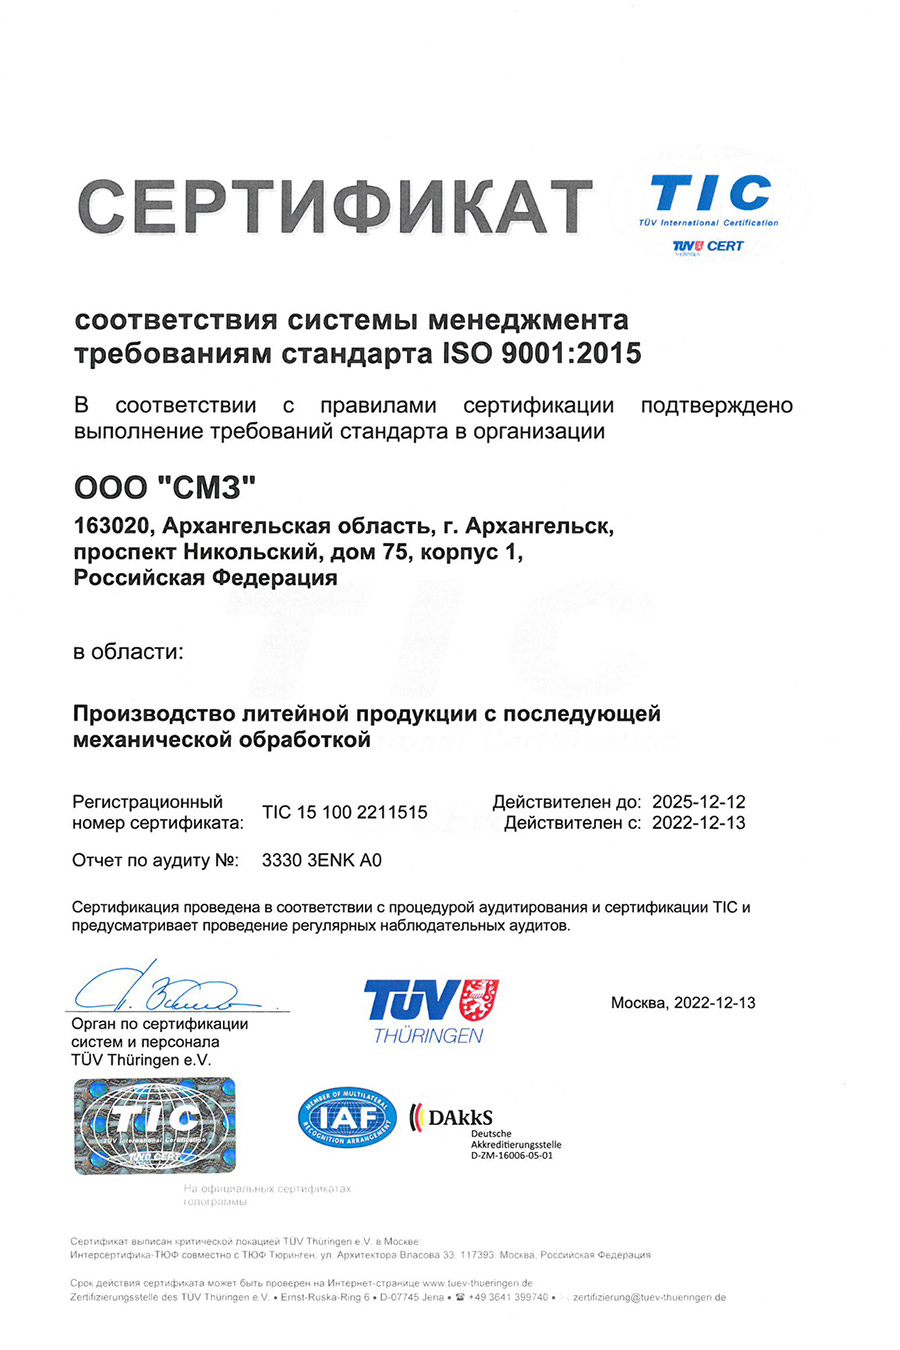 Сертификат соответствия требованиям международного стандарта менеджмента качества ISO 9001:2015